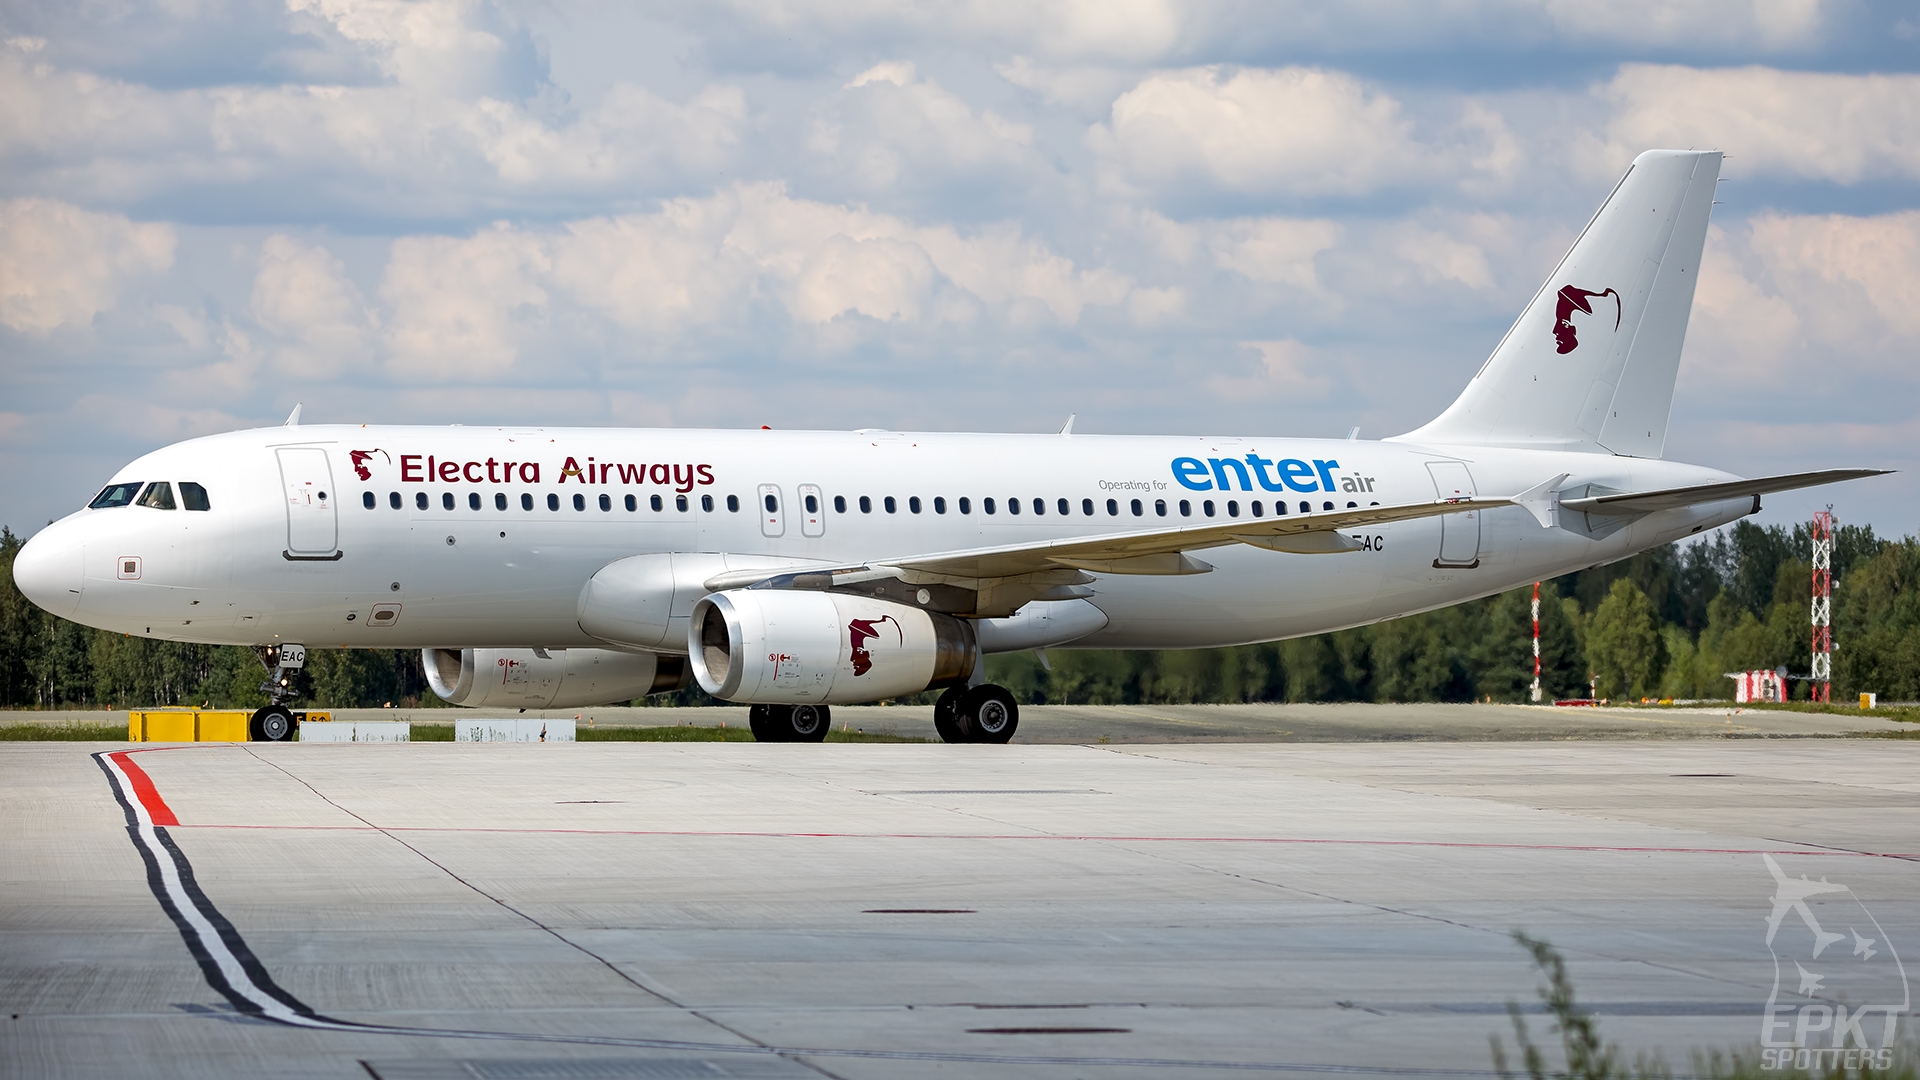 LZ-EAC - Airbus A320 -232 (EnterAir (Electra Airways)) / Pyrzowice - Katowice Poland [EPKT/KTW]